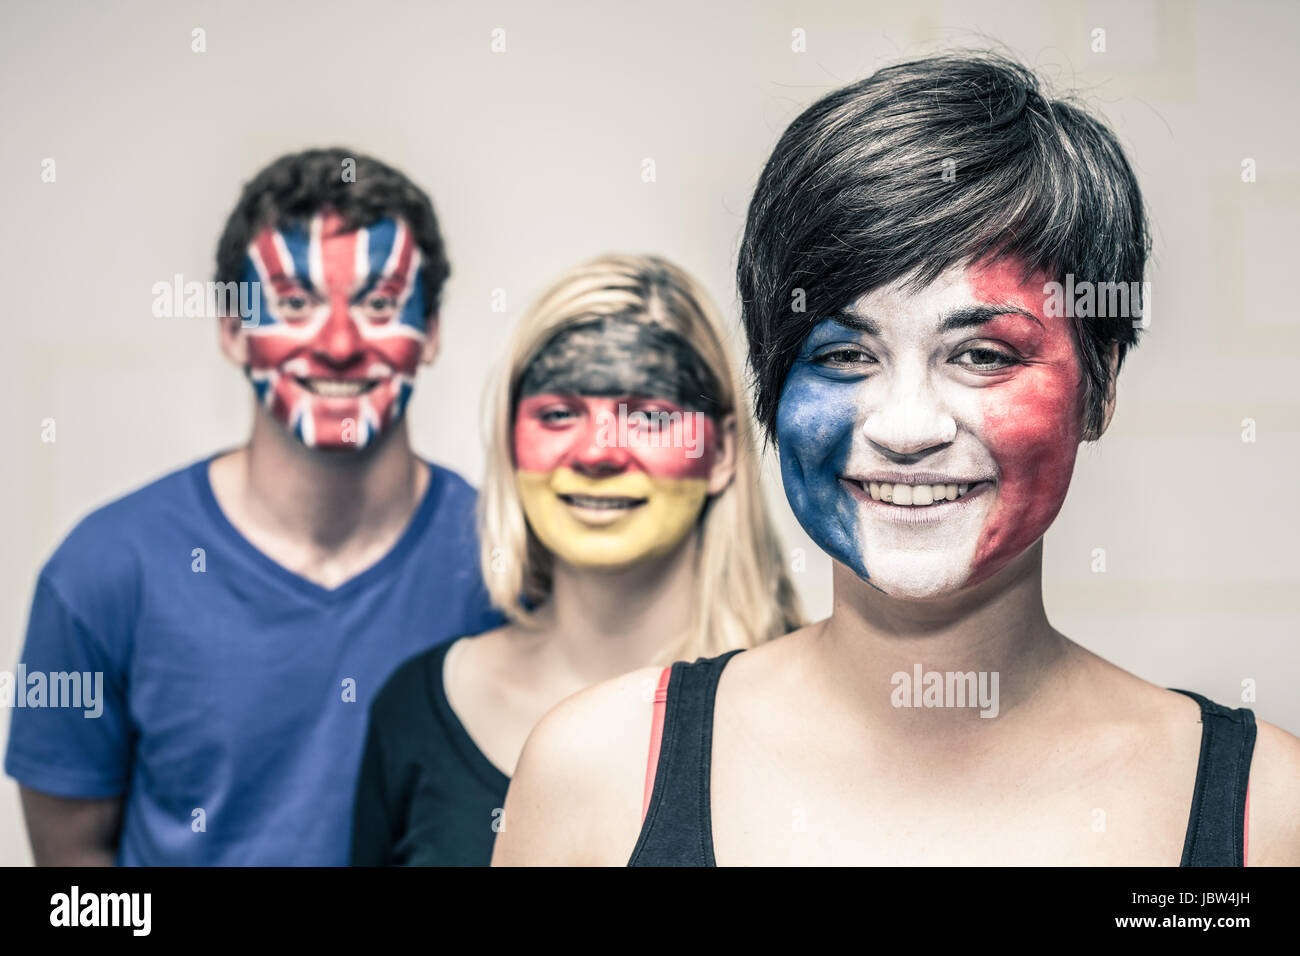 Groupe de gens heureux avec drapeaux peints sur leurs visages. Banque D'Images